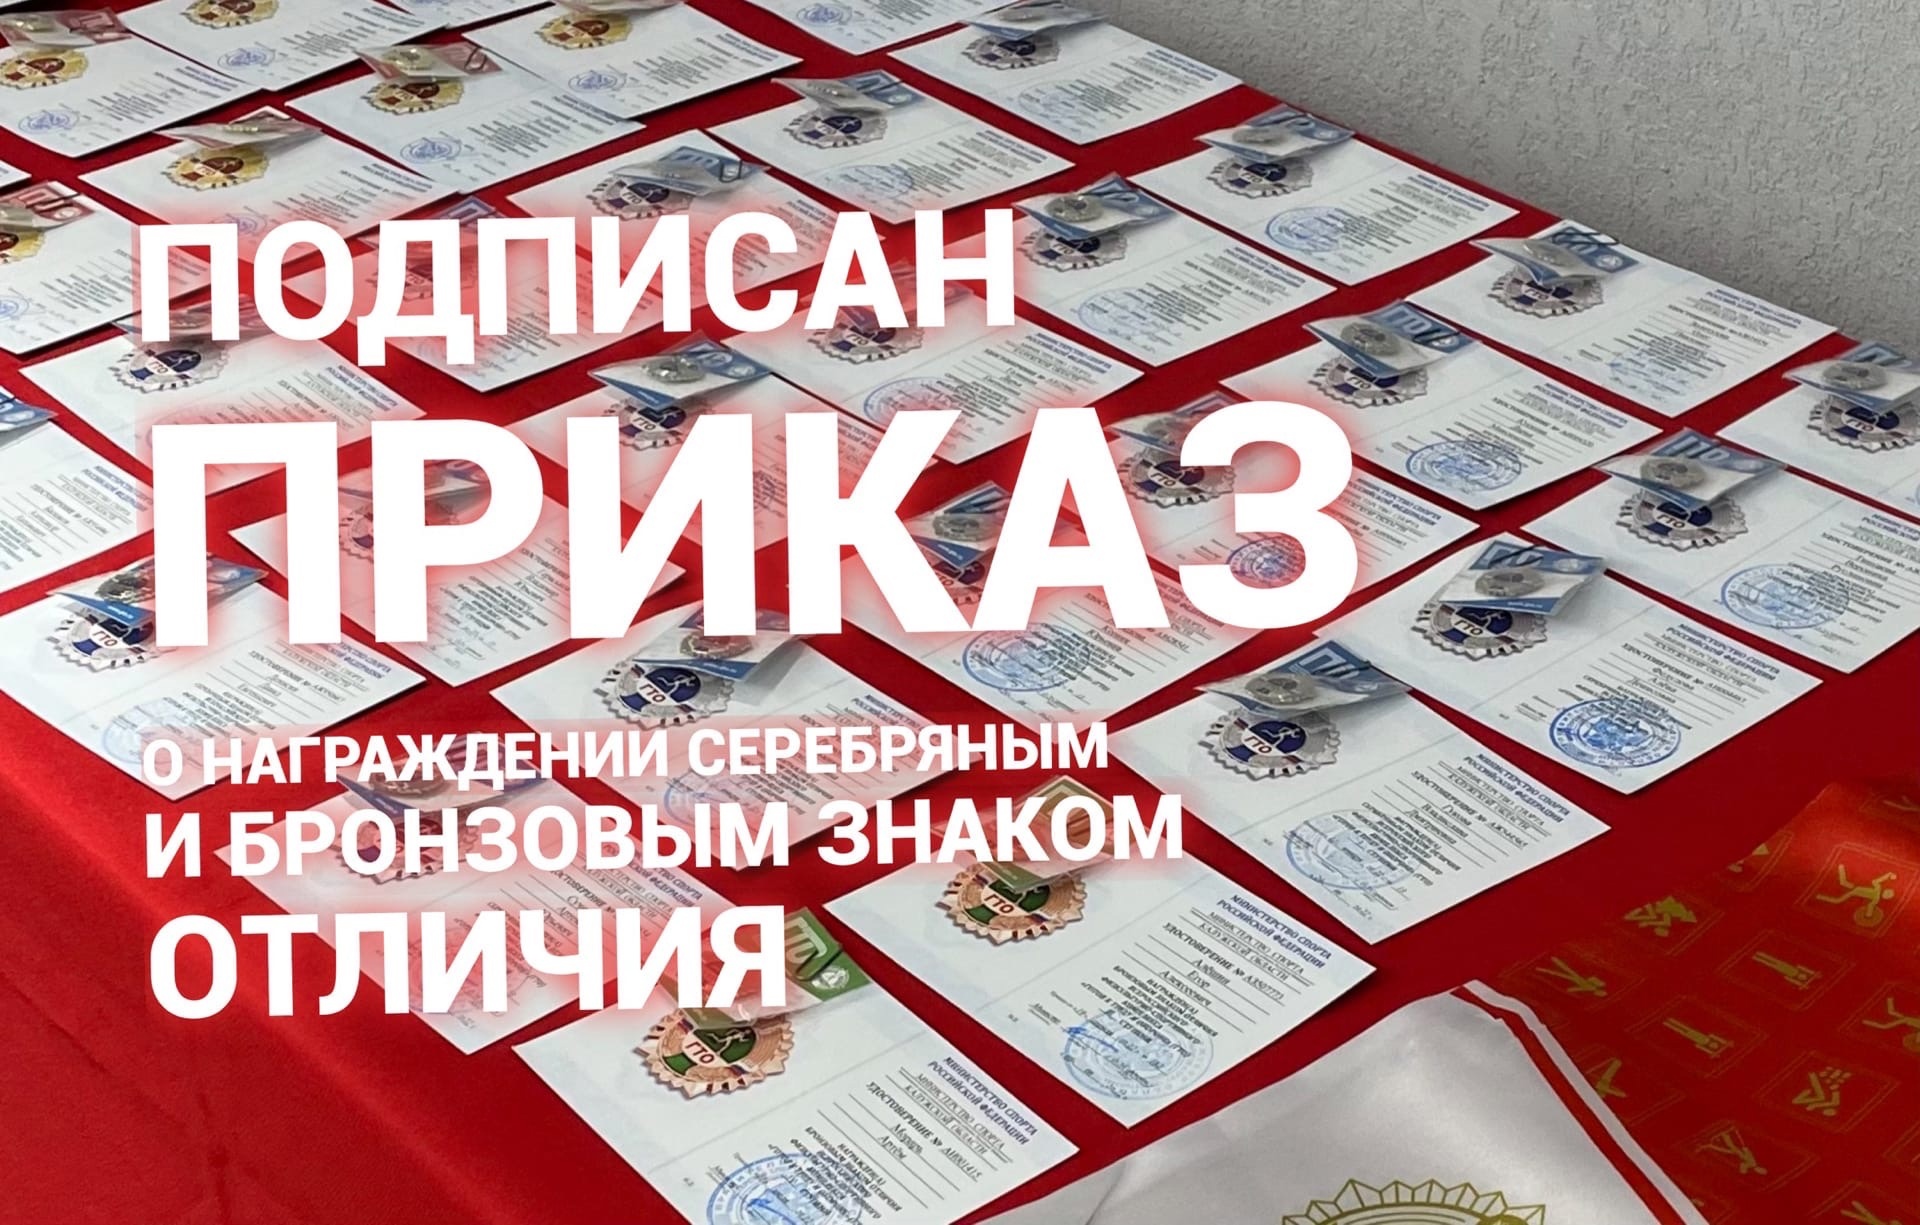 Подписан приказ о награждении золотым знаком отличия ГТО в 3 квартале 2022 года.